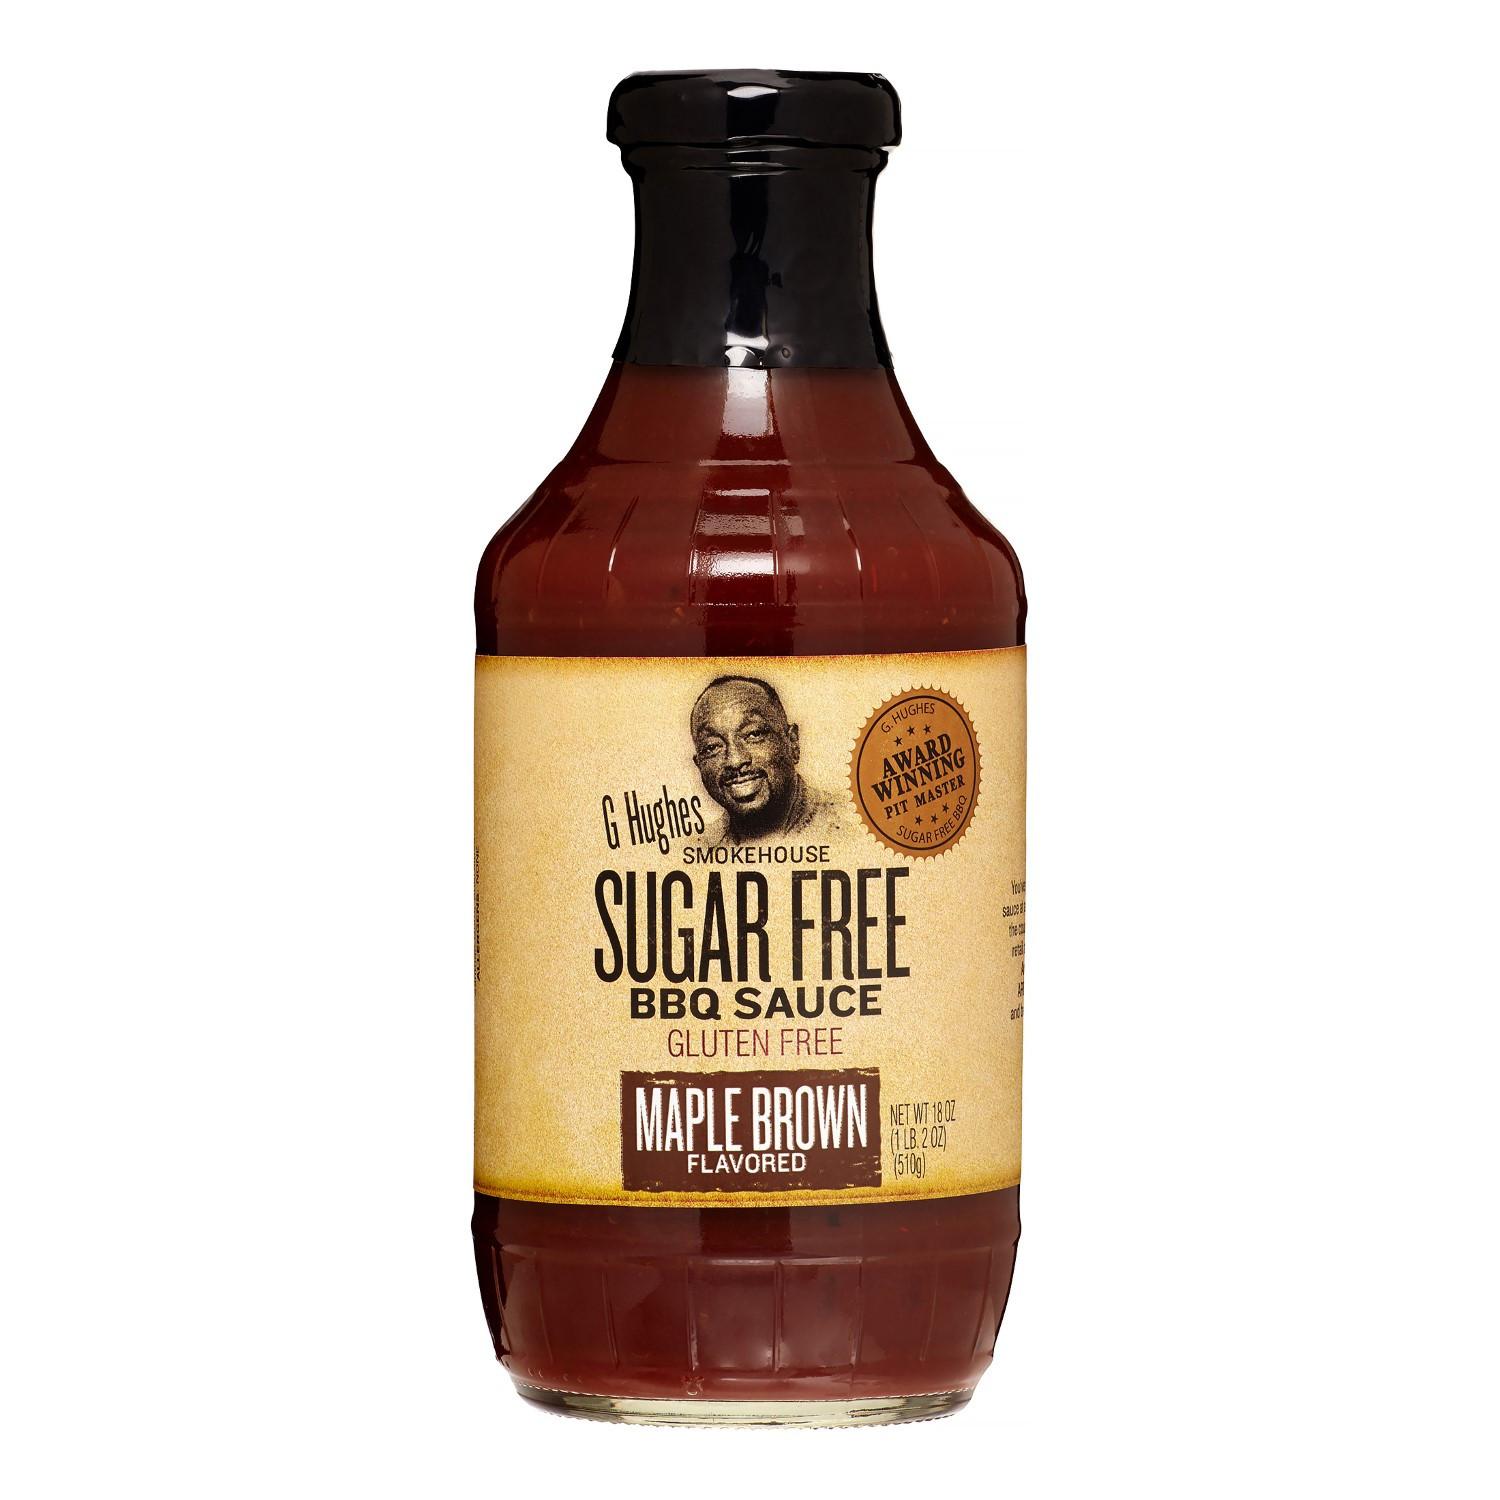 Sugar Free Bbq Sauce
 G Hughes Smokehouse BBQ Sauce Maple Brown Flavored Sugar